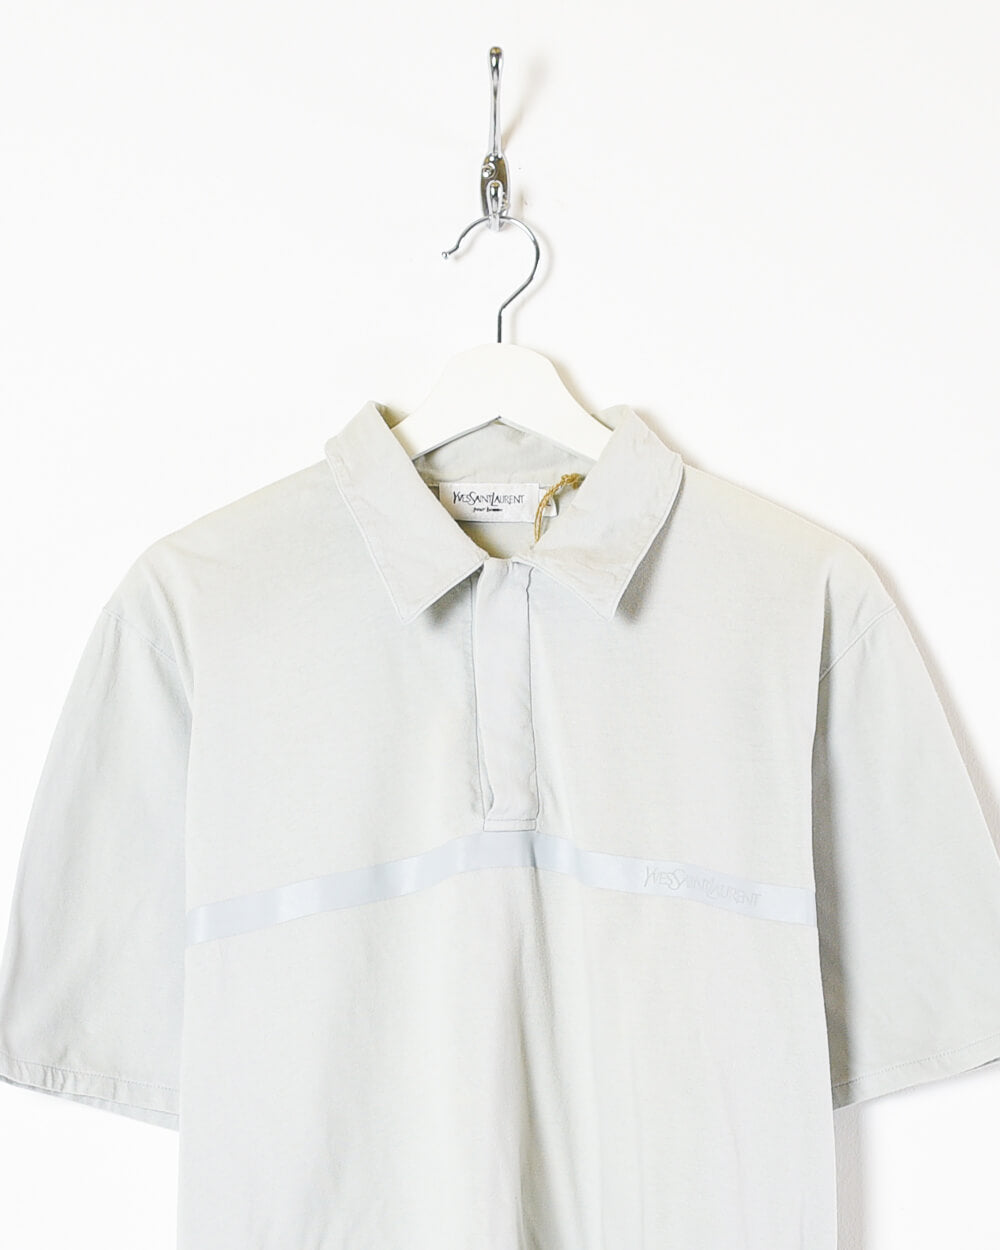 Stone Yves Saint Laurent Polo Shirt - Medium